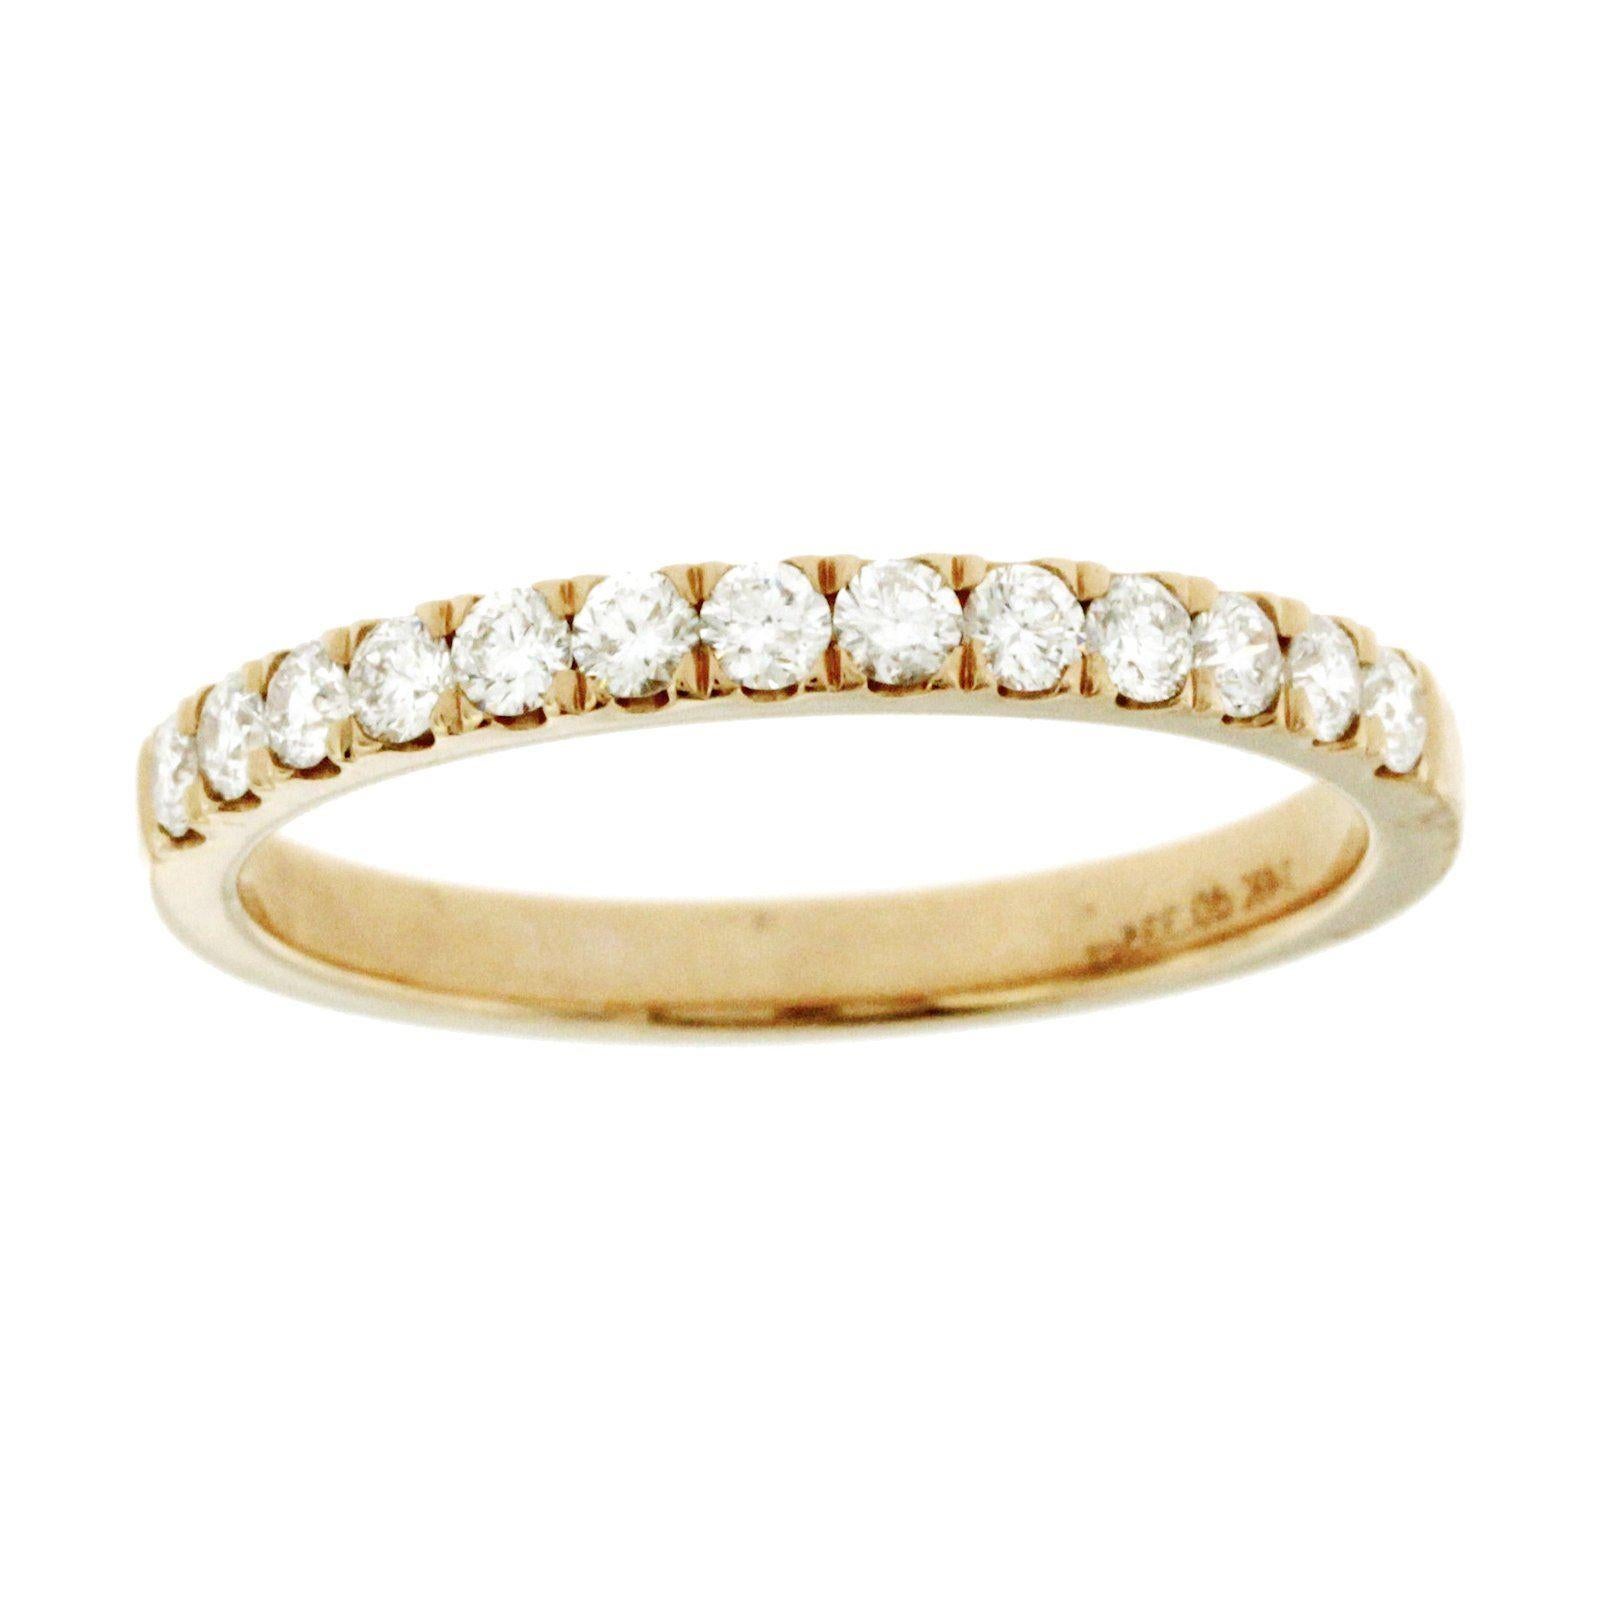 0.33 Carat Natural Diamonds G SI1 in 14 Karat Rose Gold Half Wedding Band Ring